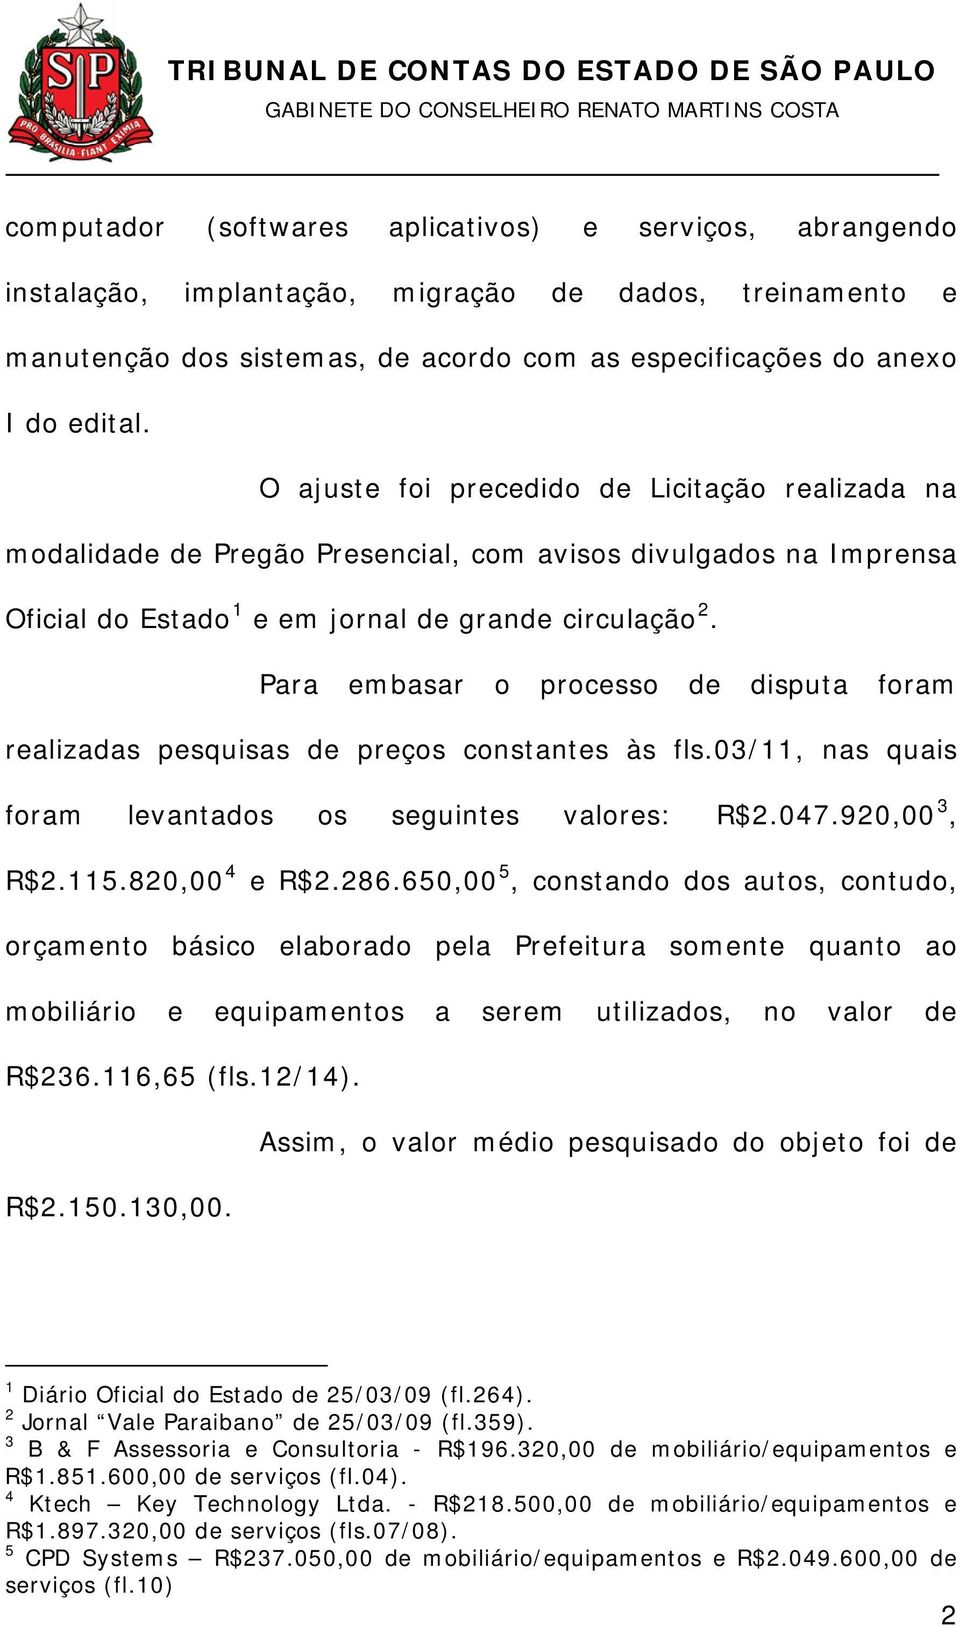 Para embasar o processo de disputa foram realizadas pesquisas de preços constantes às fls.03/11, nas quais foram levantados os seguintes valores: R$2.047.920,00 3, R$2.115.820,00 4 e R$2.286.